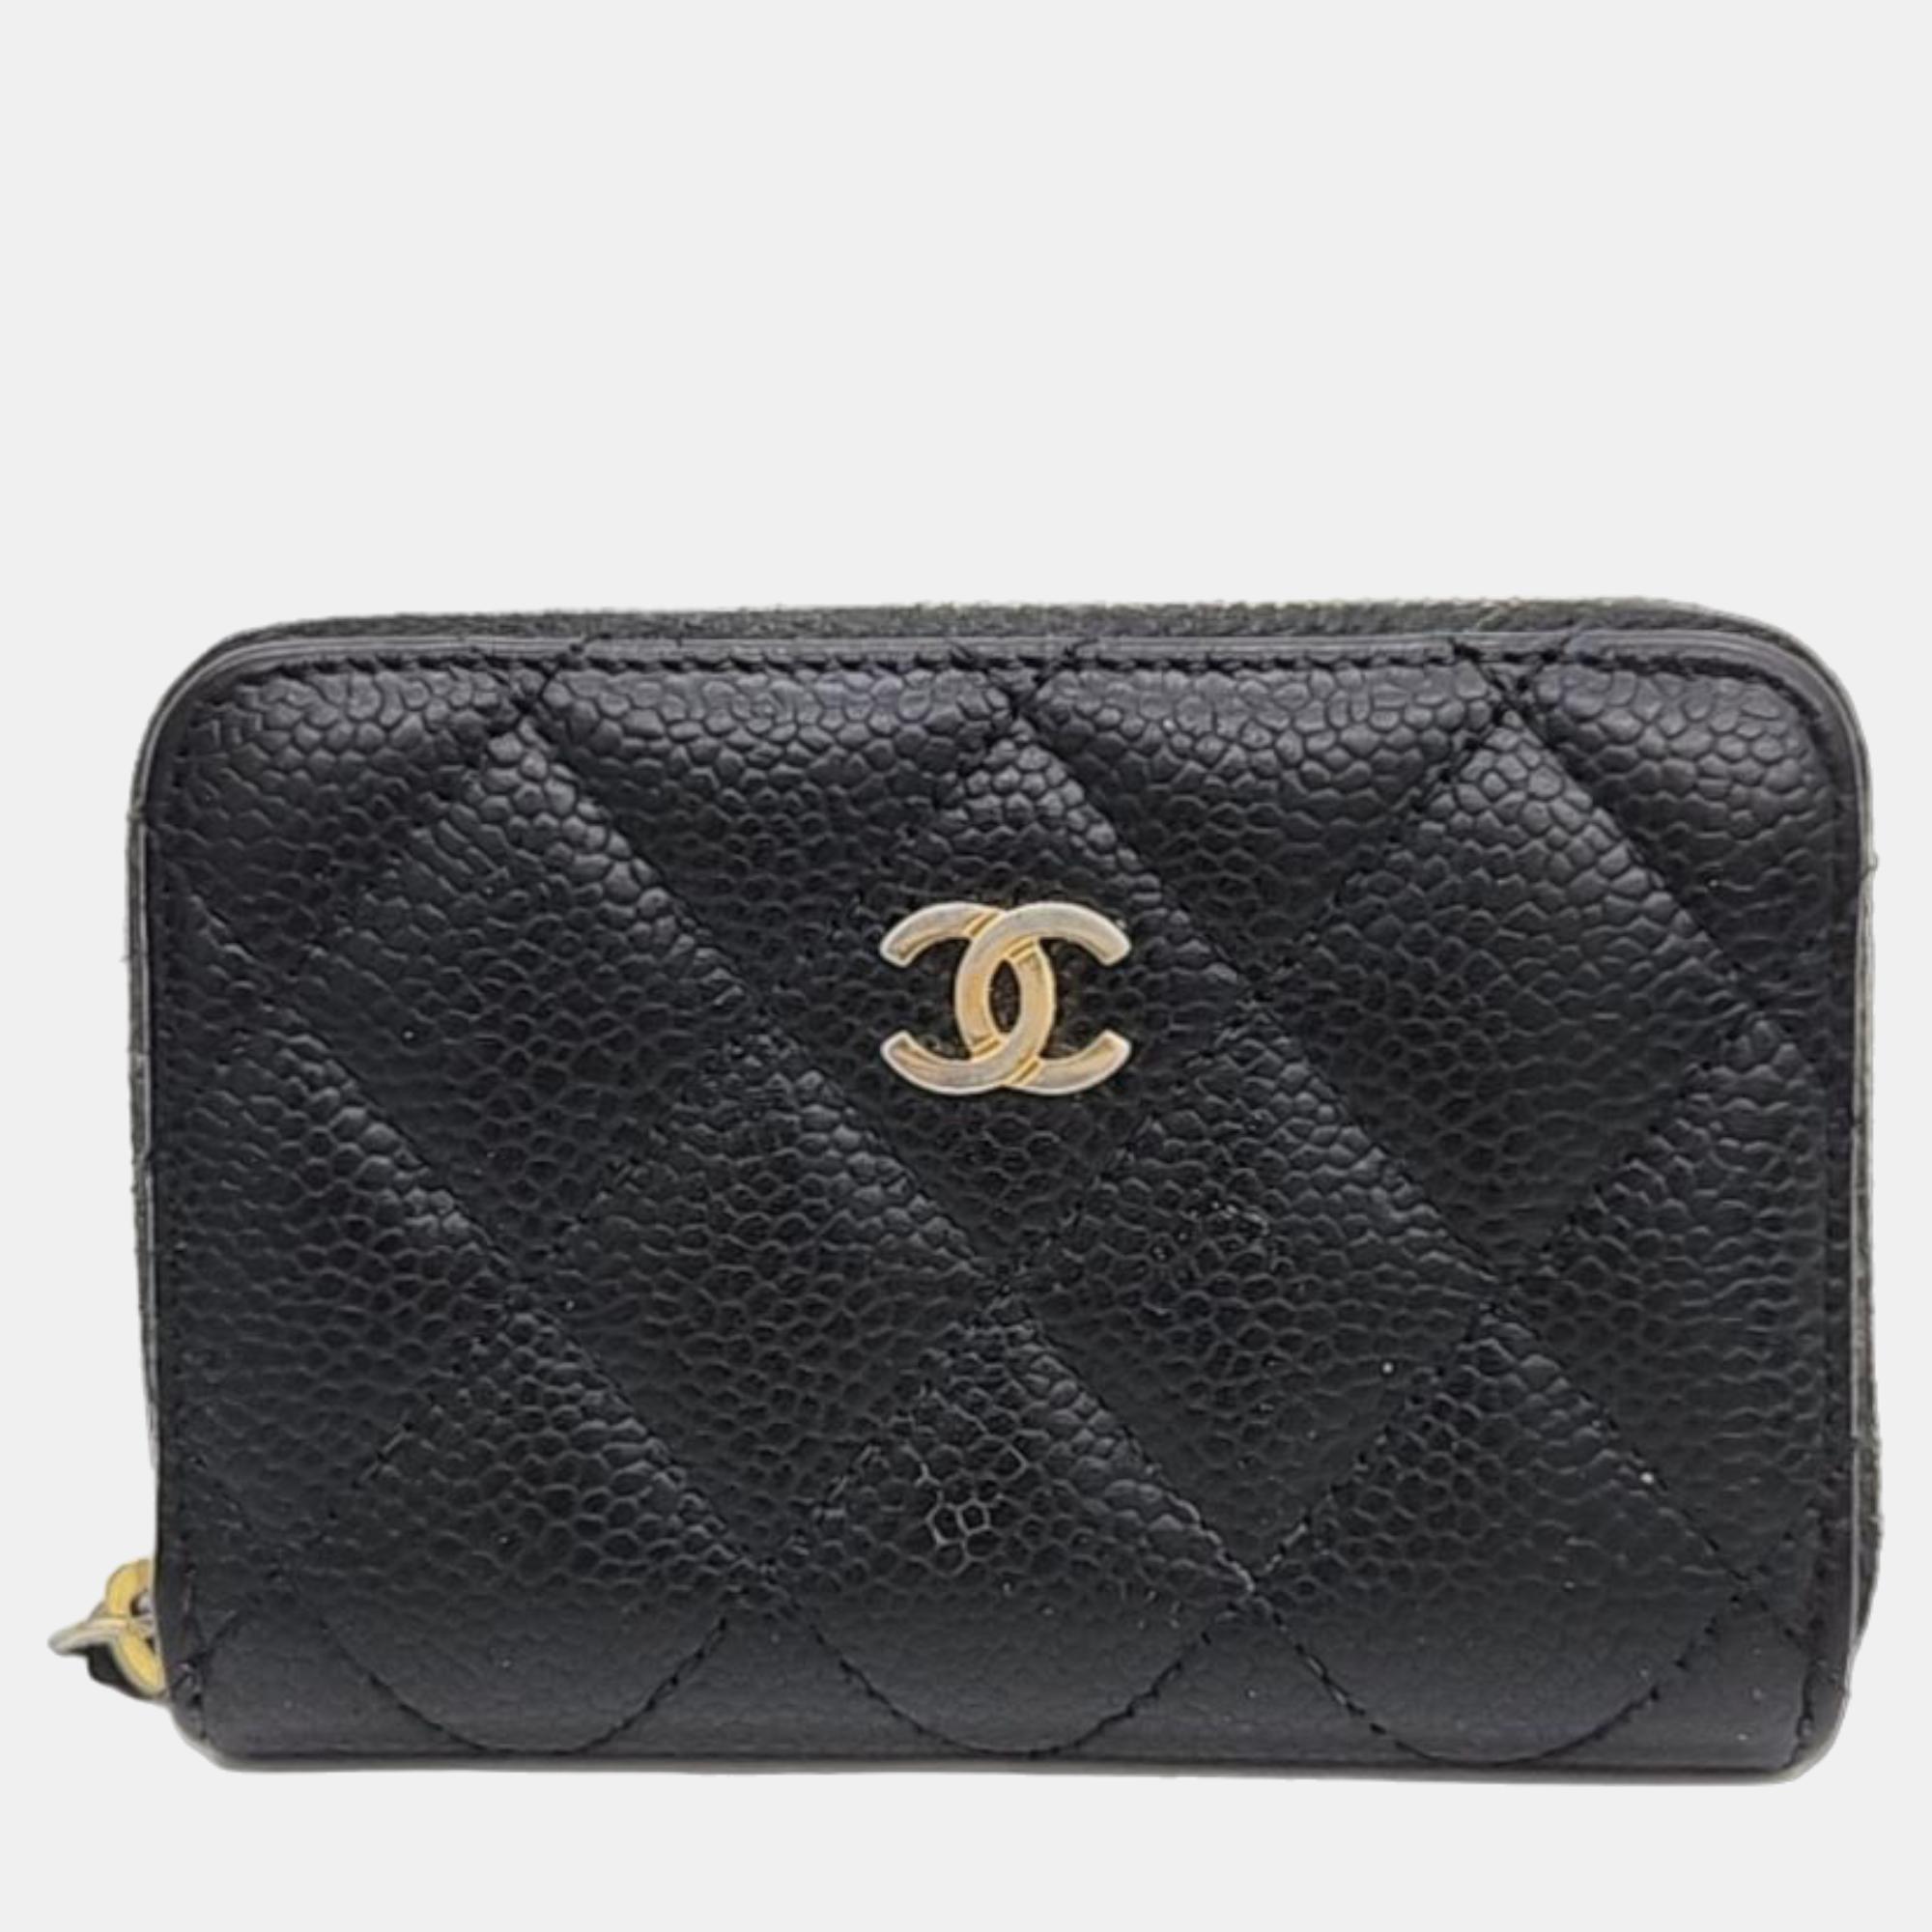 Chanel black caviar card wallet